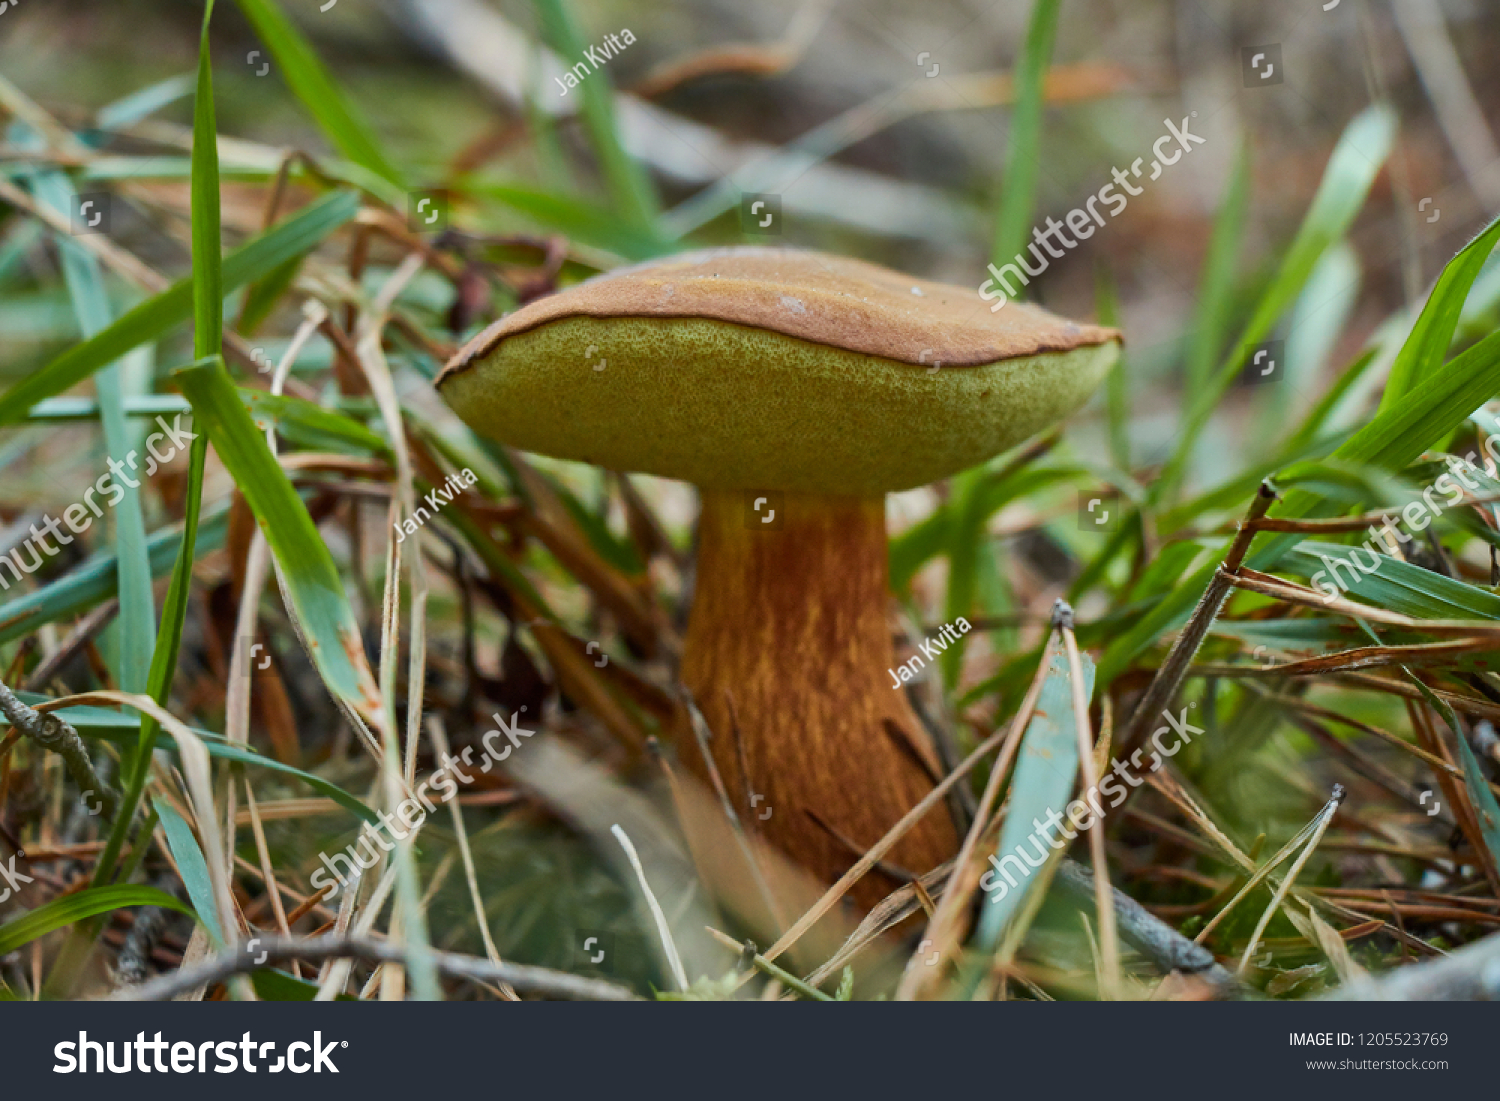 Closeup of brown beautiful pine boletus mushroom. #1205523769